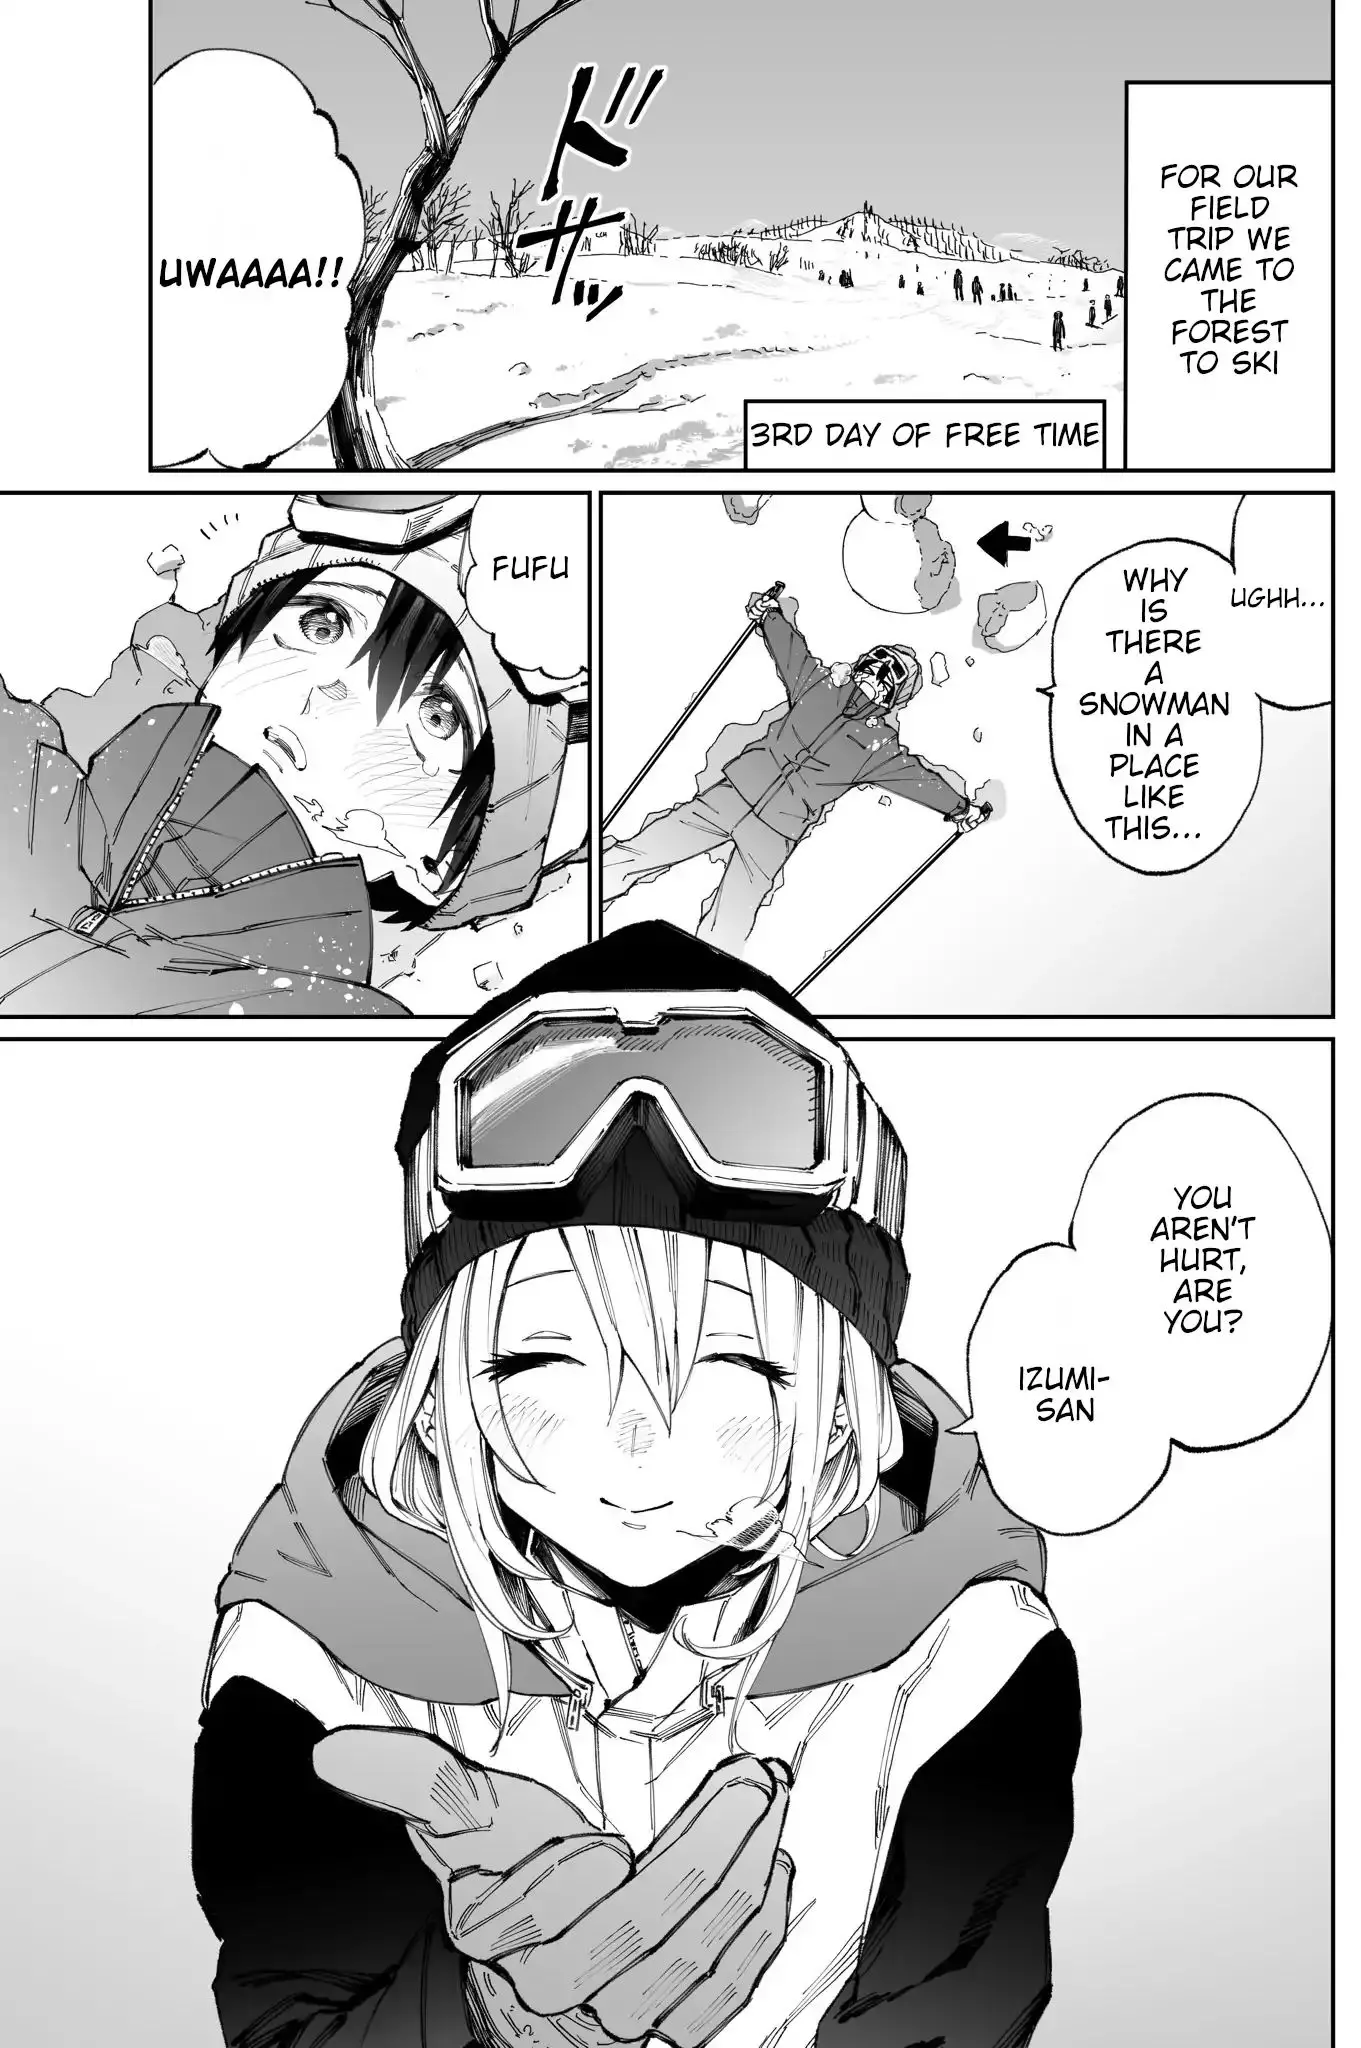 Shikimori's Not Just A Cutie - 9 page 2